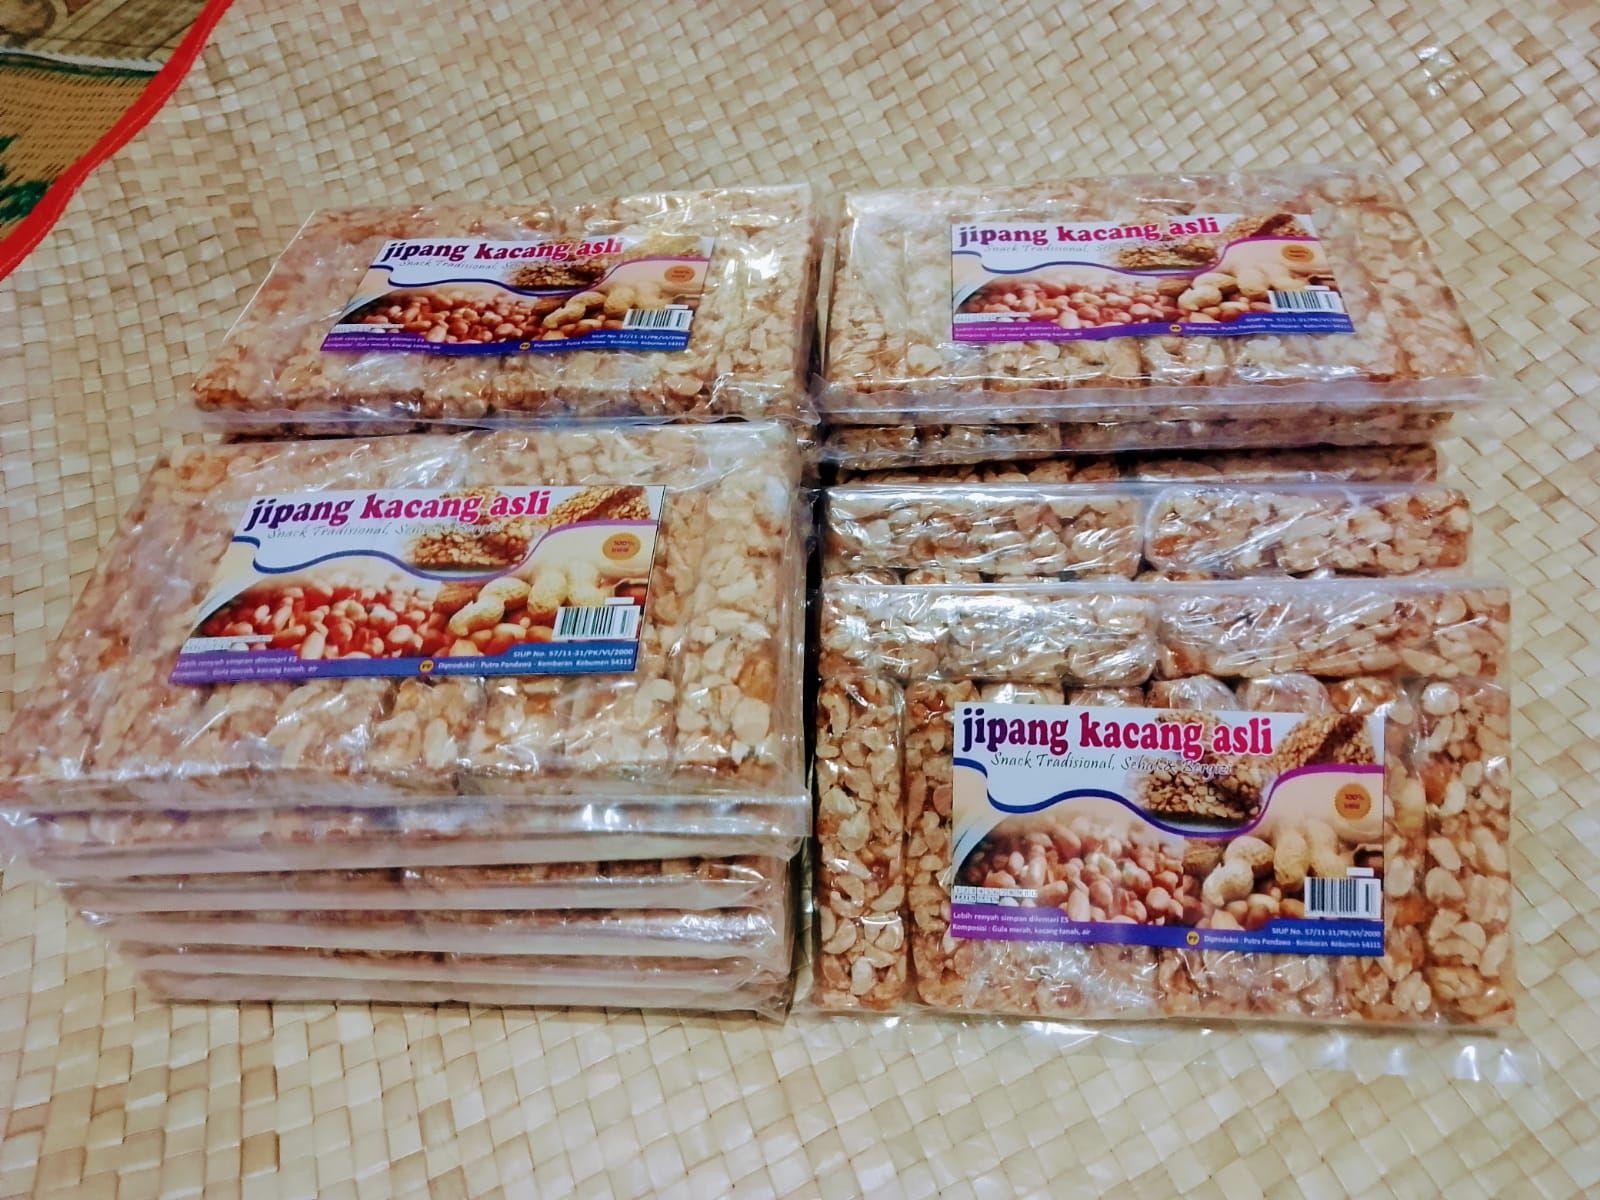 Ragam kuliner Kebumen yakni Jipang kacang pandawa yang diproduksi oleh Agus Malik beralamat di Desa Kembaran, Kabupaten Kebumen.